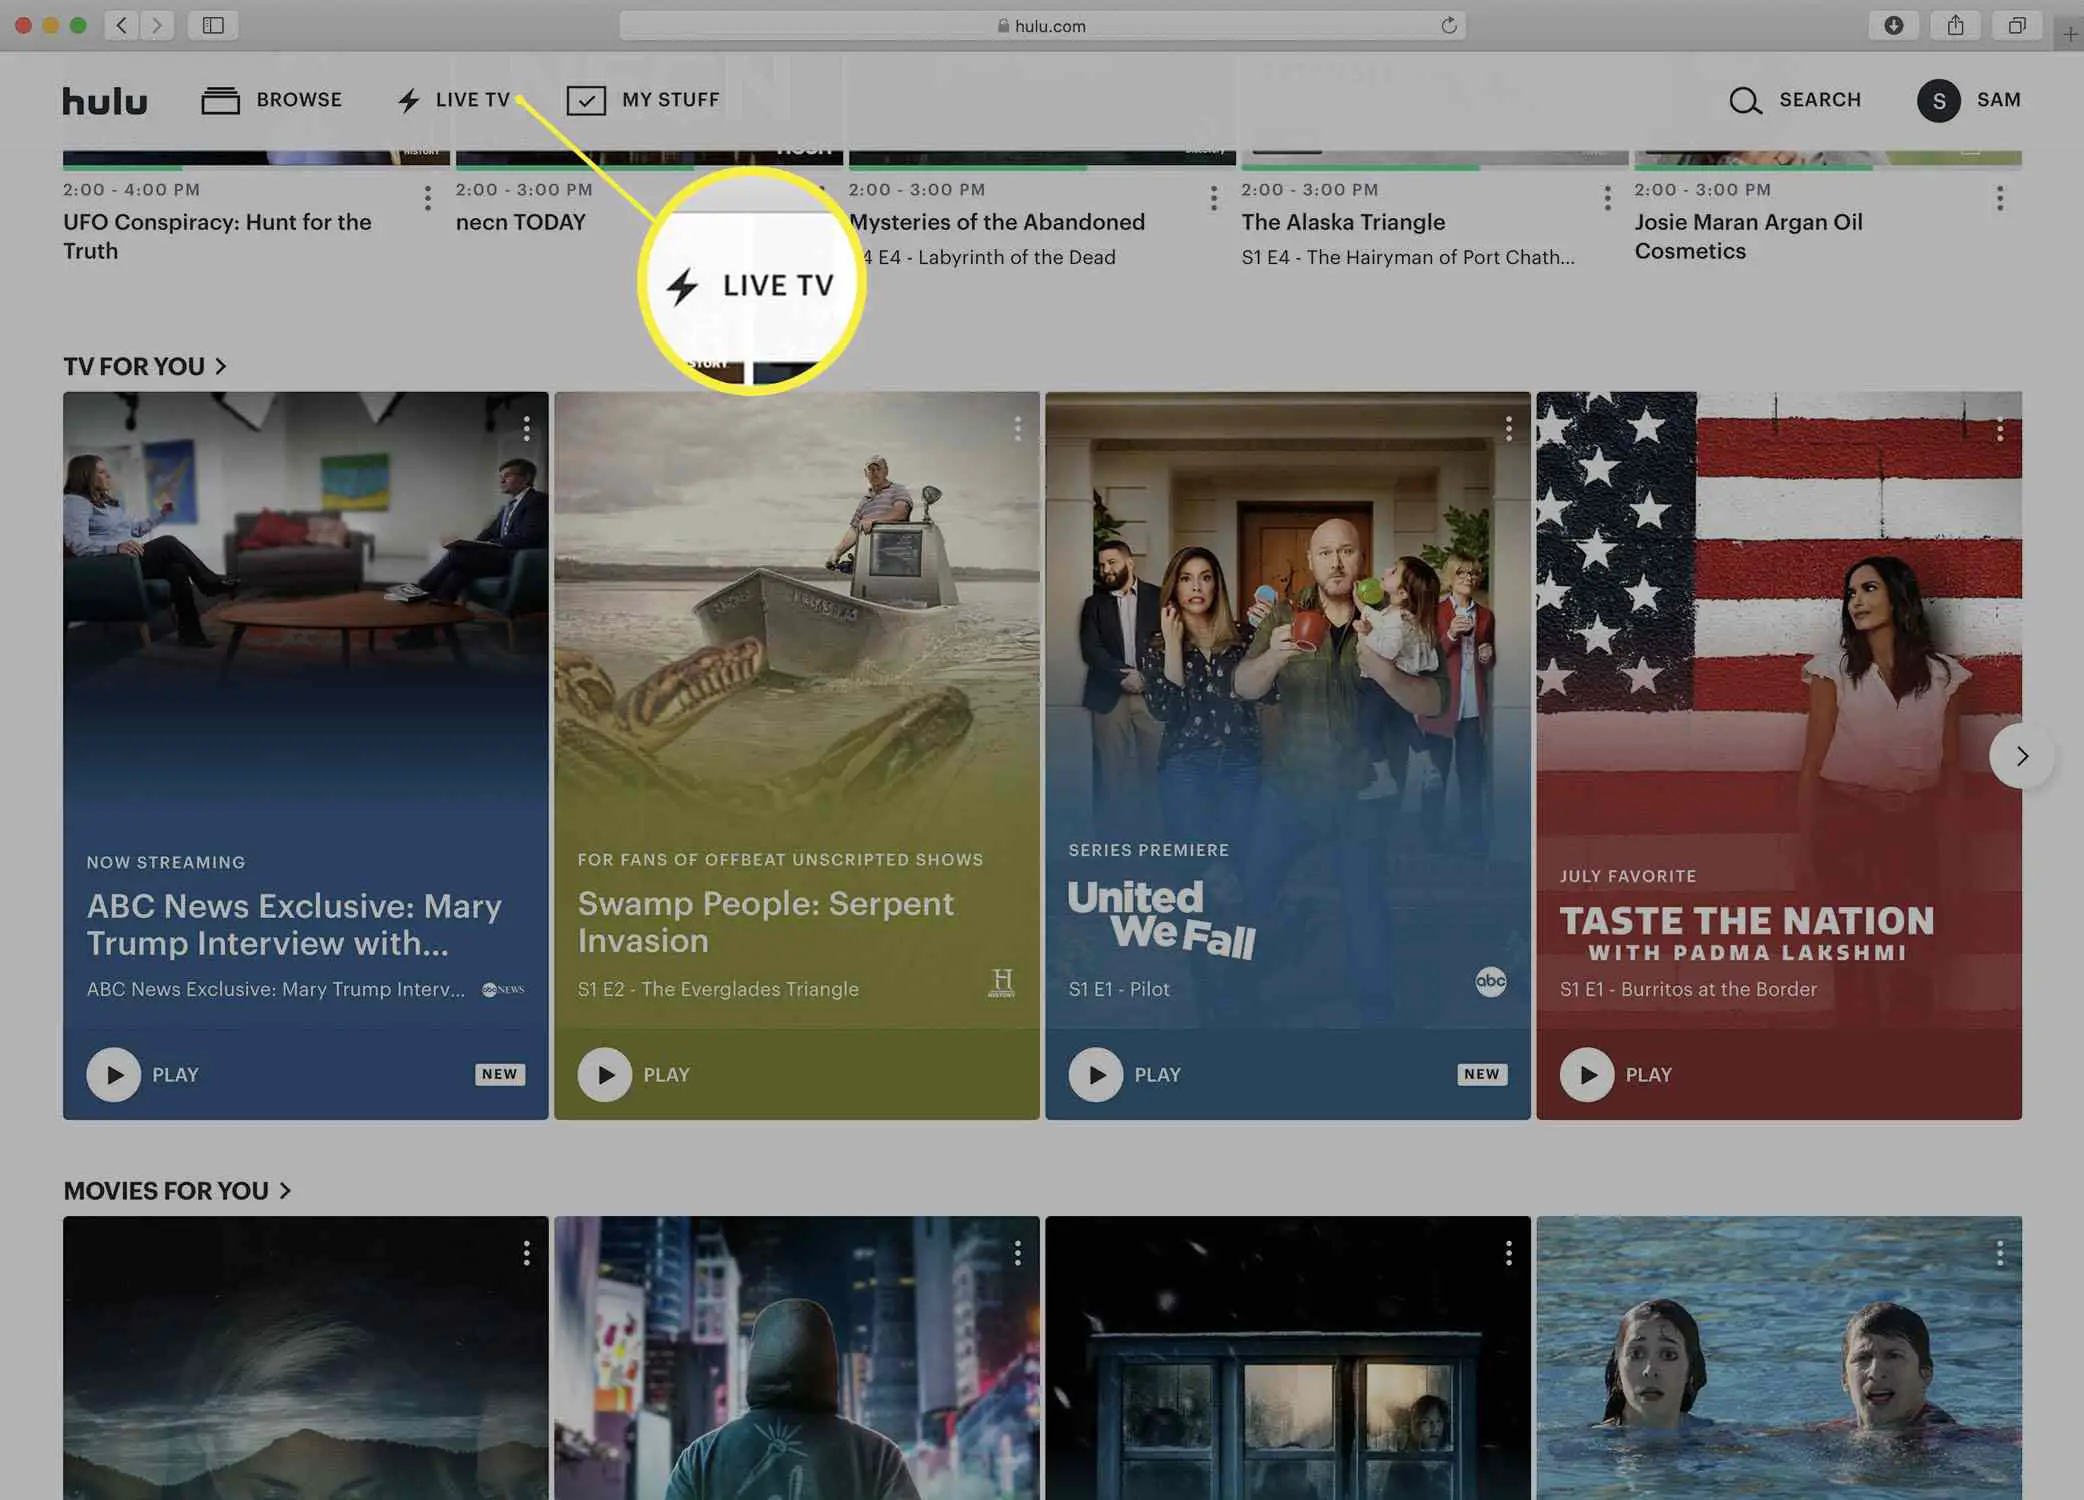 Captura de tela da página inicial do Hulu.